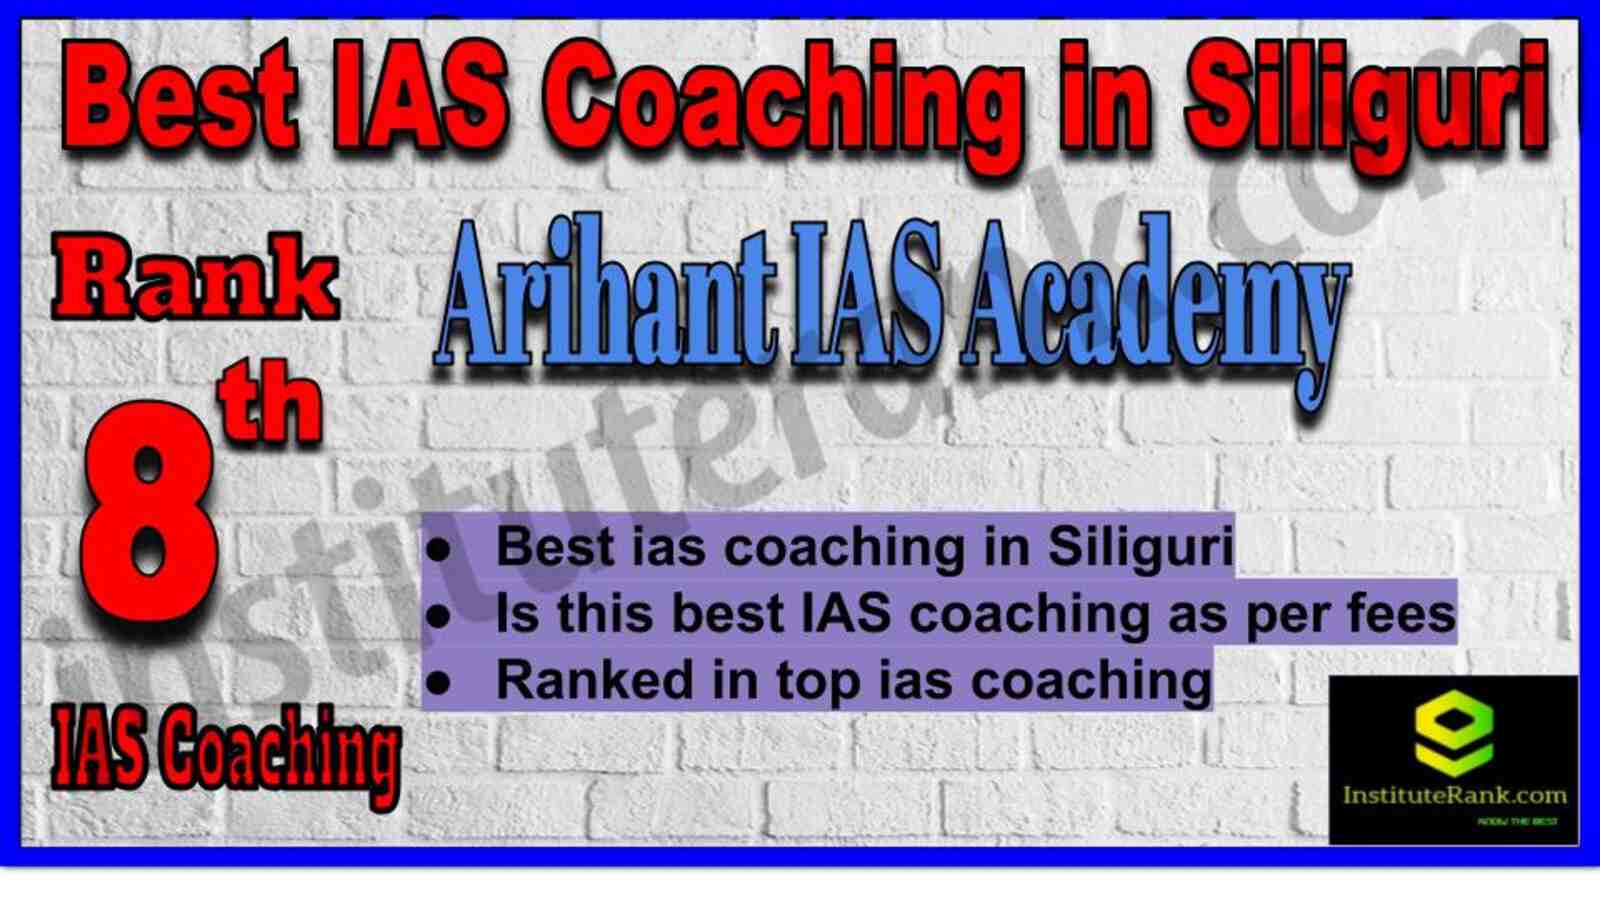 8th Best IAS Coaching in Siliguri